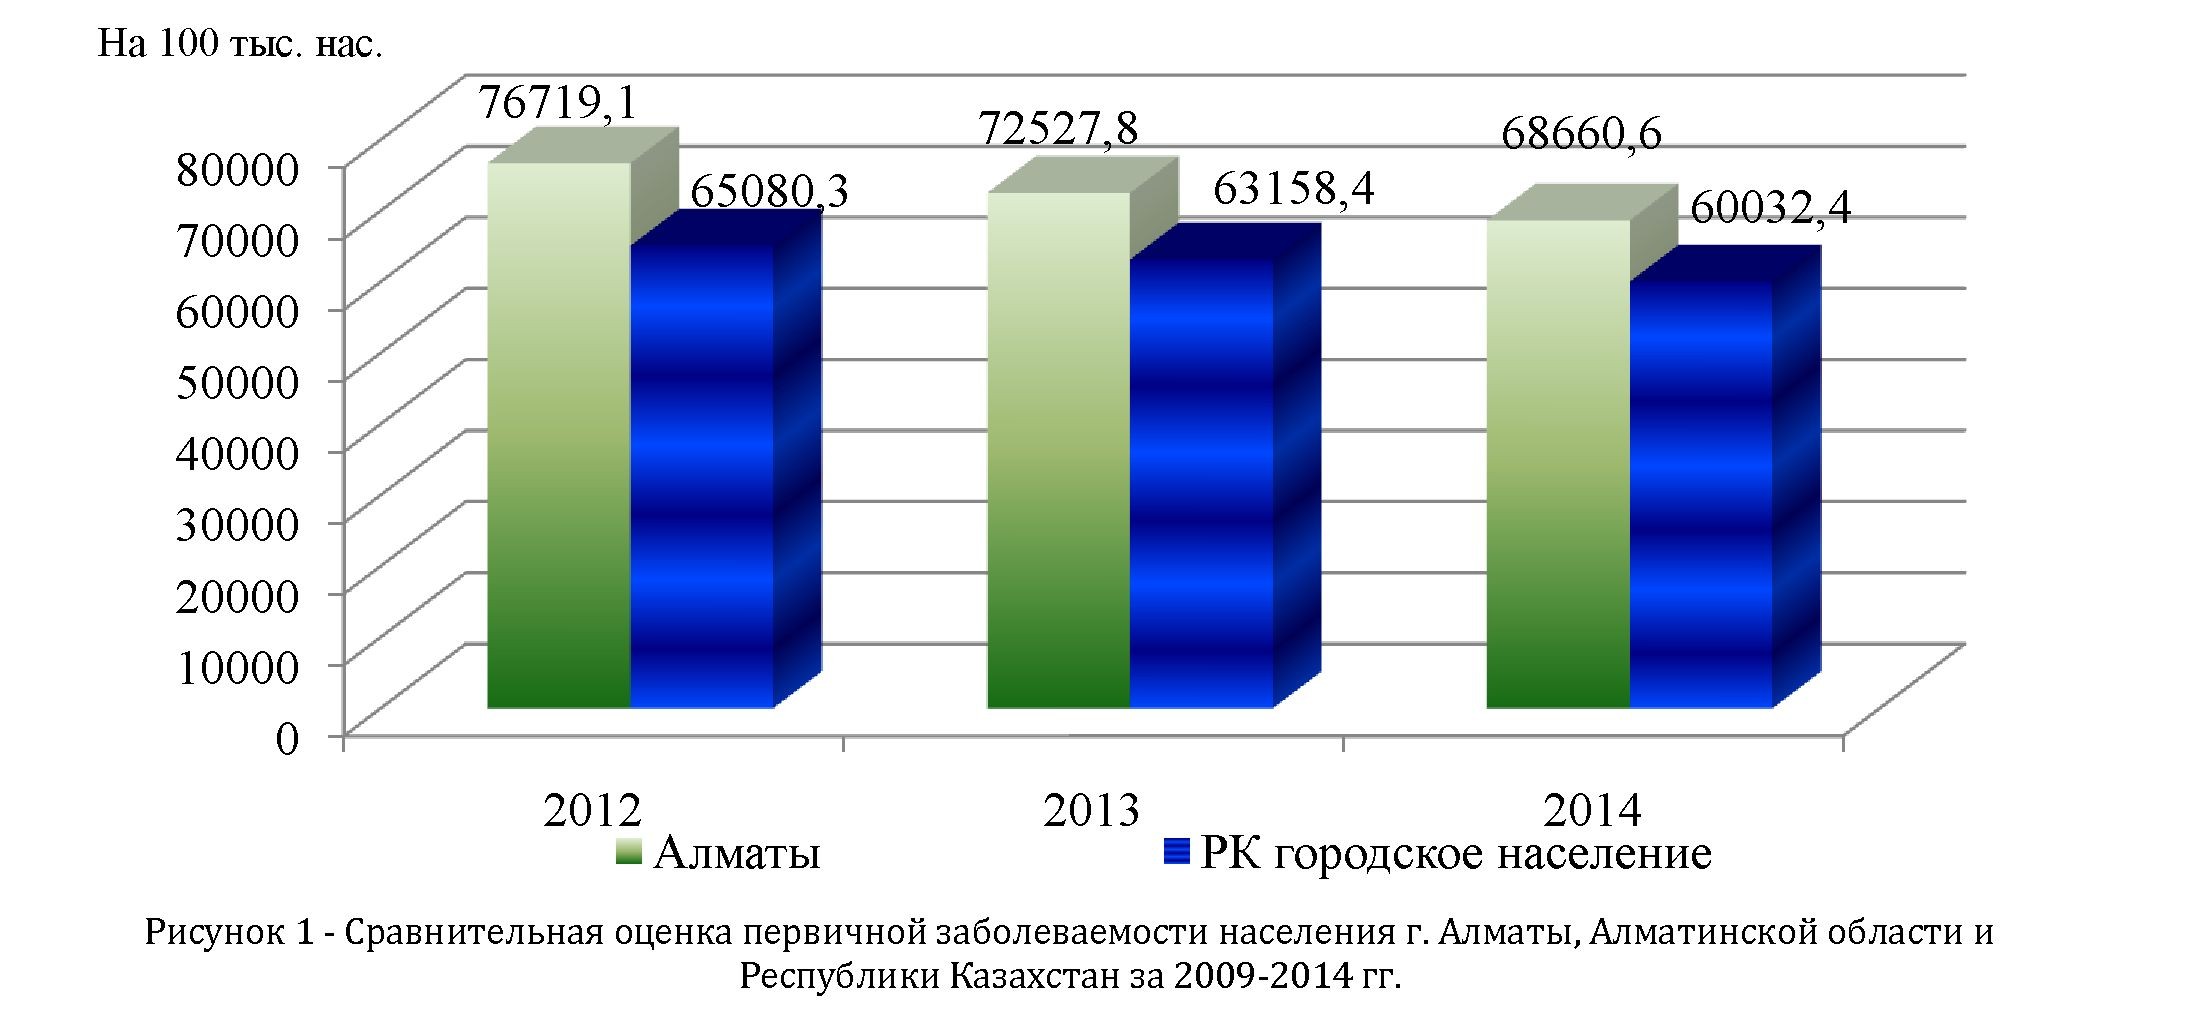 Состояние здоровья населения крупного мегаполиса на примере города Алматы